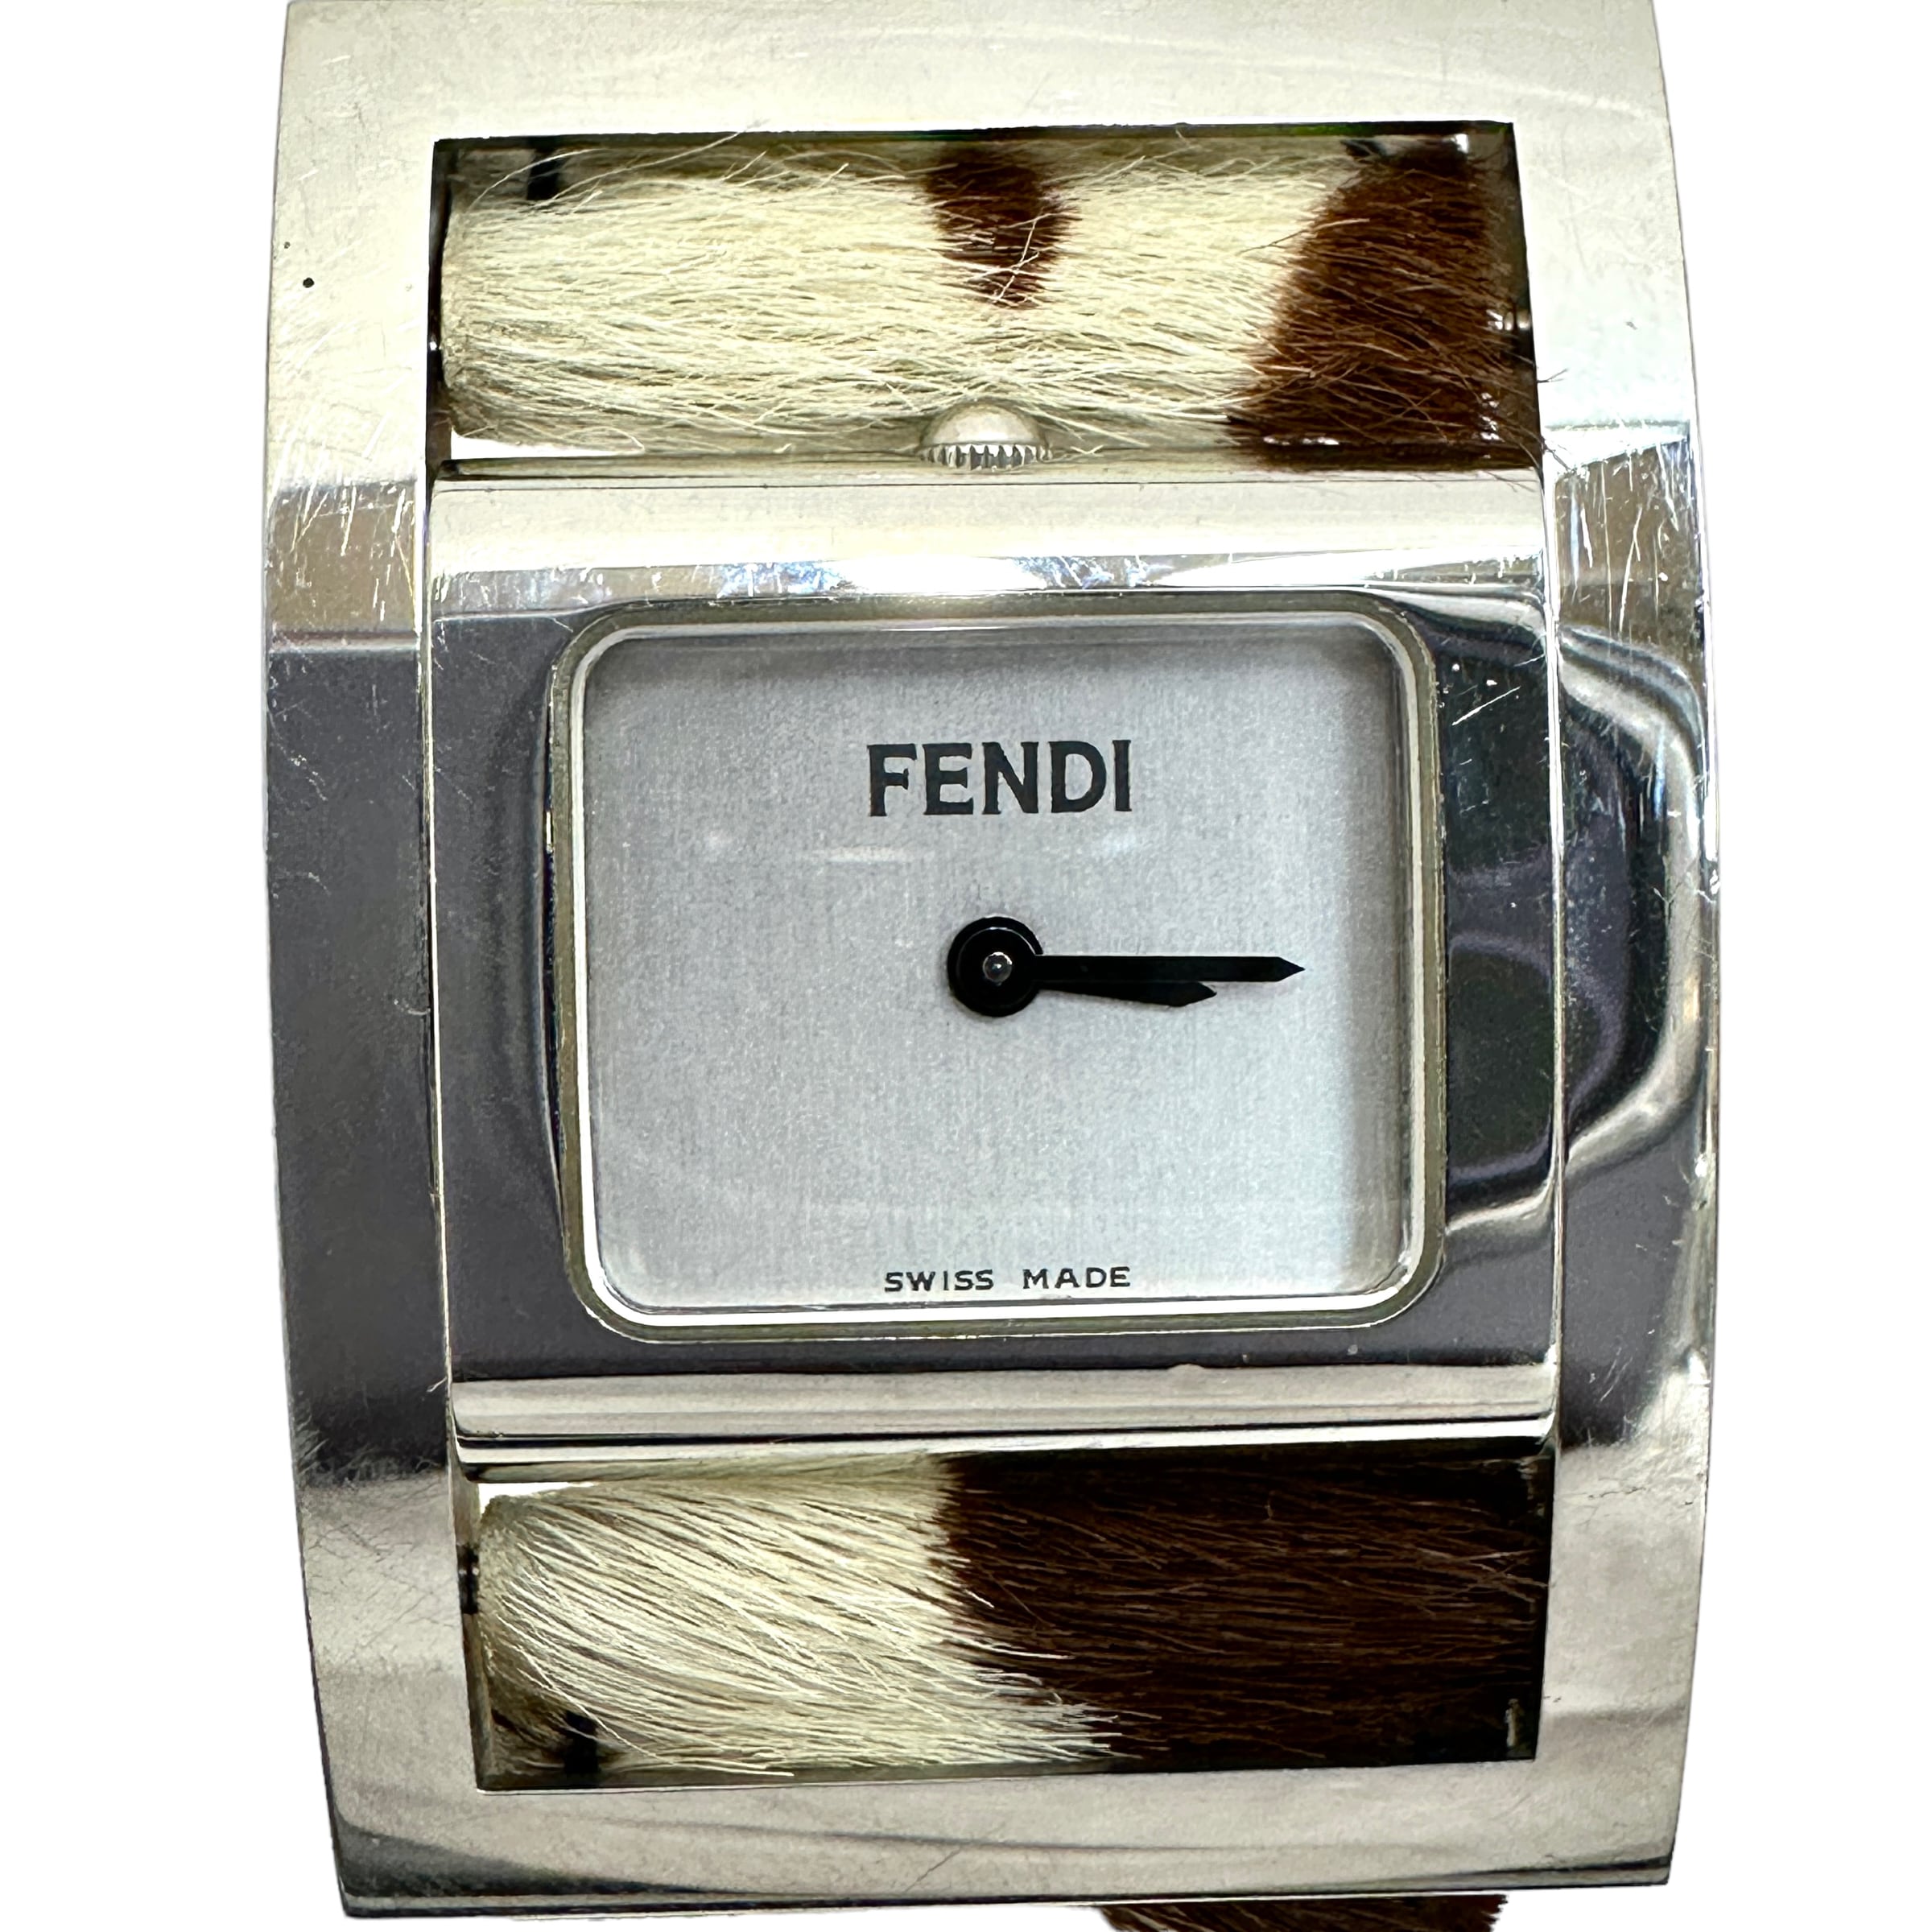 FENDI フェンディ クォーツ SS ハラコベルト 腕時計 レディース 11578 